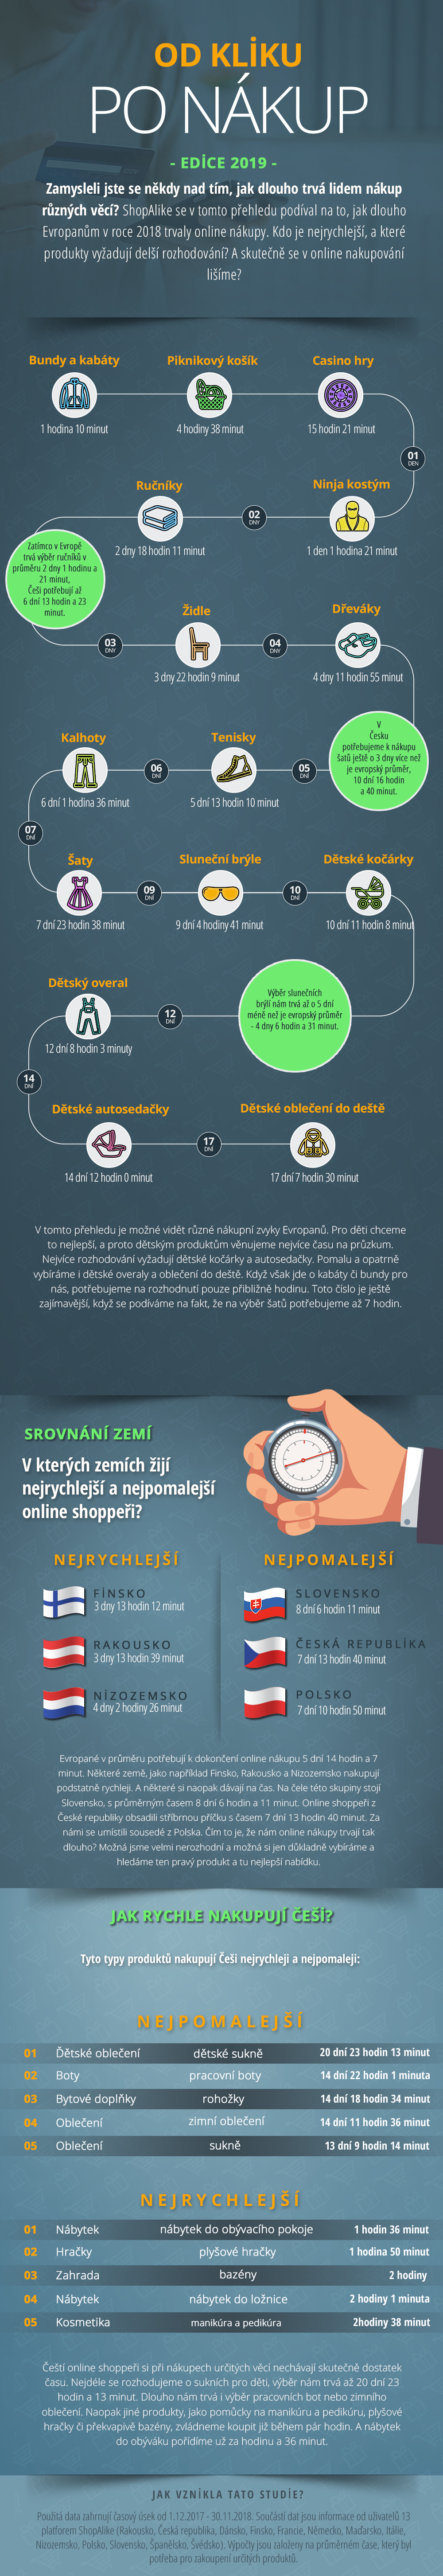 Od kliku po nákup 2019 - infografika ShopAlike.cz